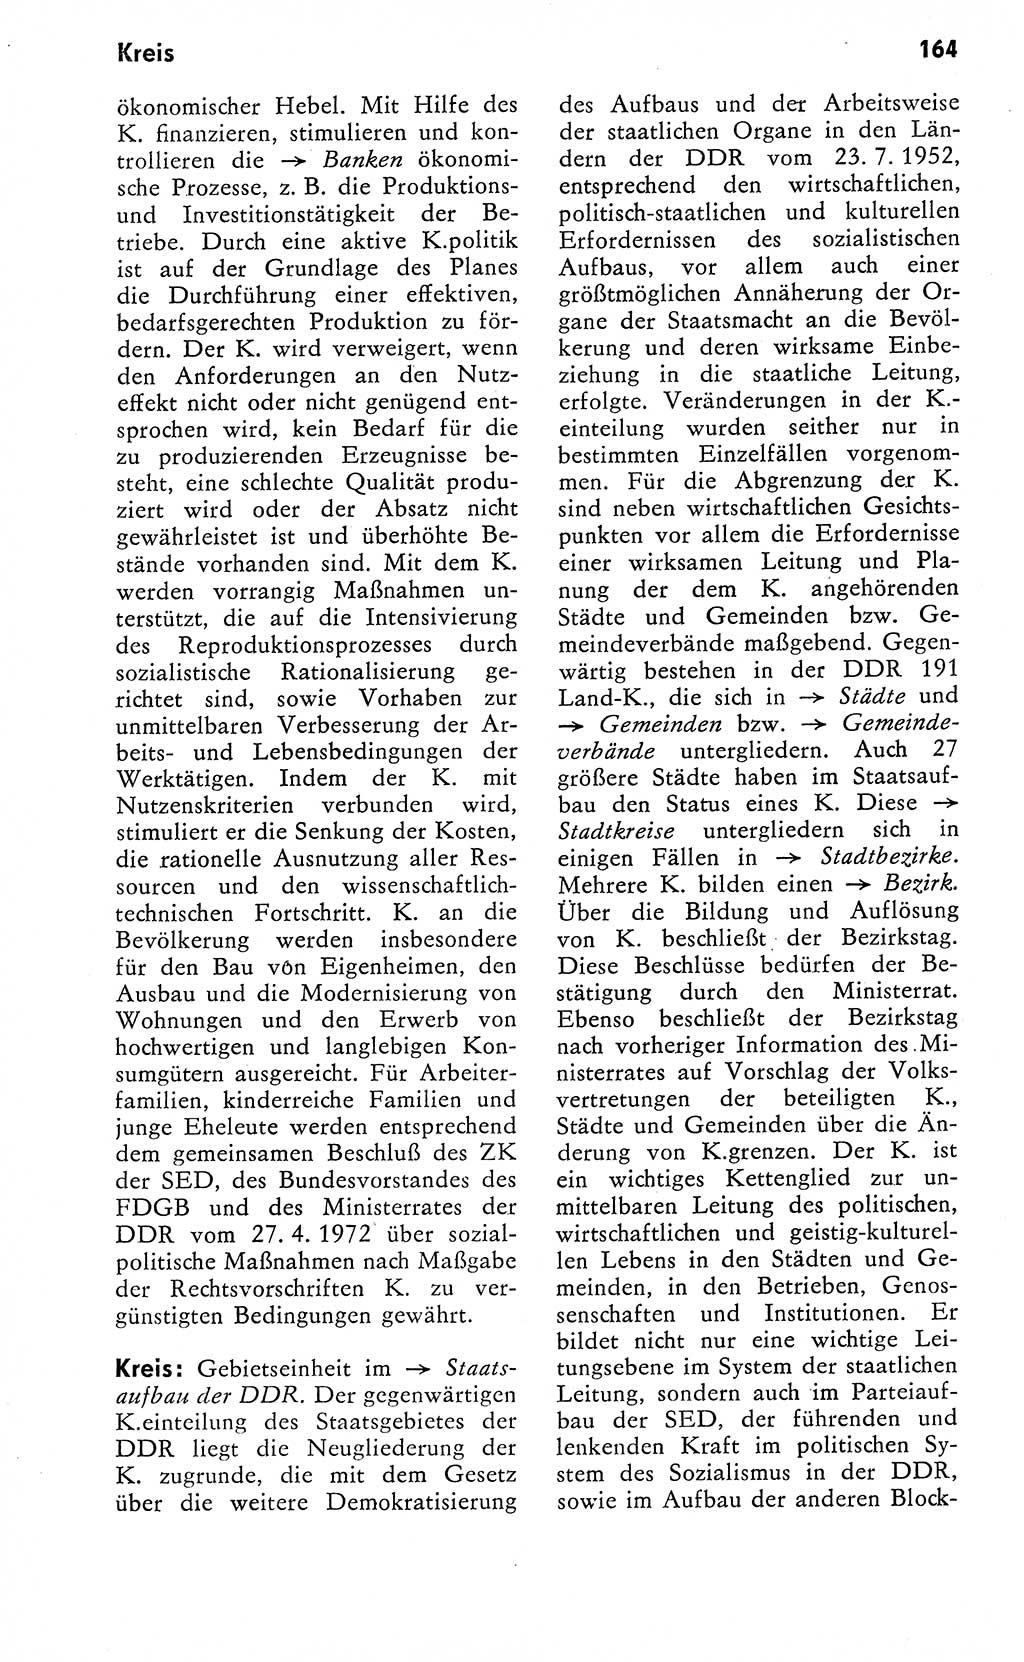 Wörterbuch zum sozialistischen Staat [Deutsche Demokratische Republik (DDR)] 1974, Seite 164 (Wb. soz. St. DDR 1974, S. 164)